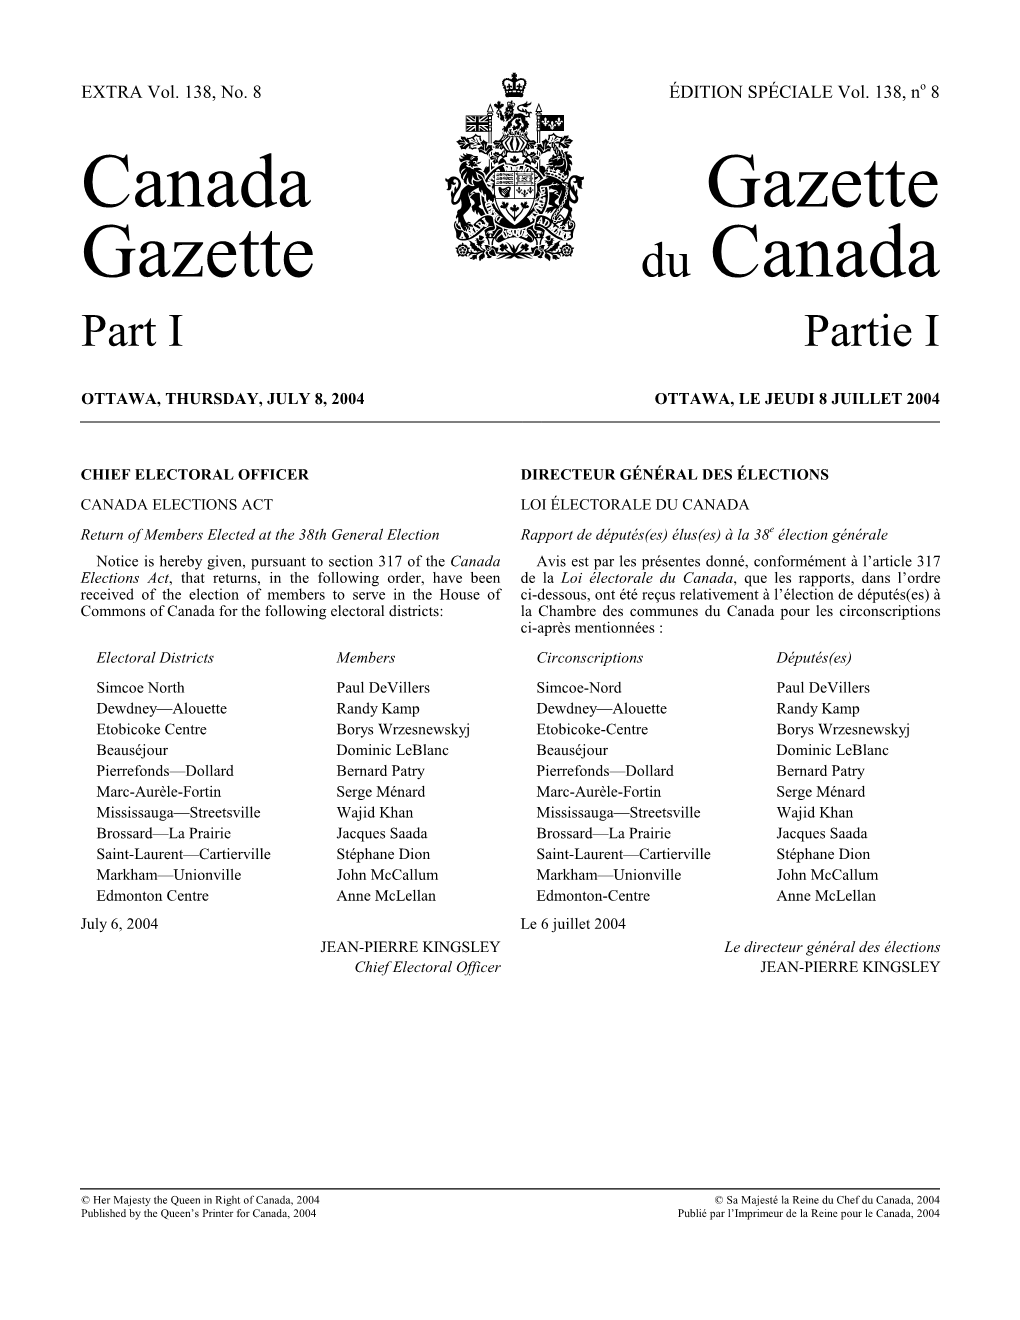 Canada Gazette, Extra